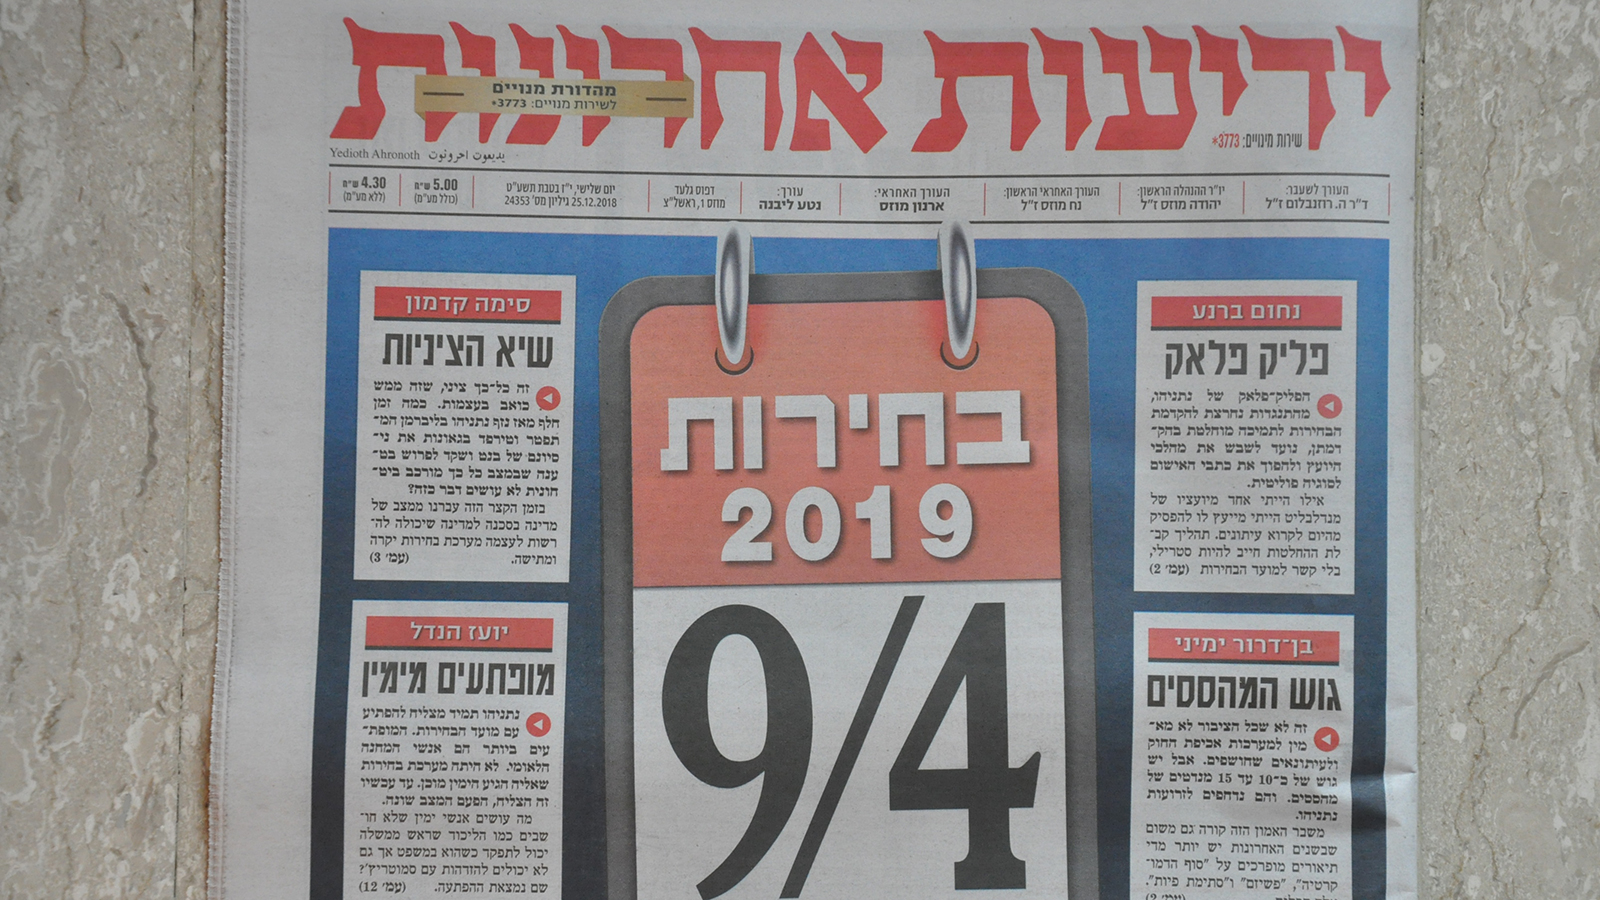 الصفحة الرئيسية لصحيفة يديعوت أحرونوت تتحدث عن انتخابات الكنيست في التاسع من أبريل/نيسان المقبل